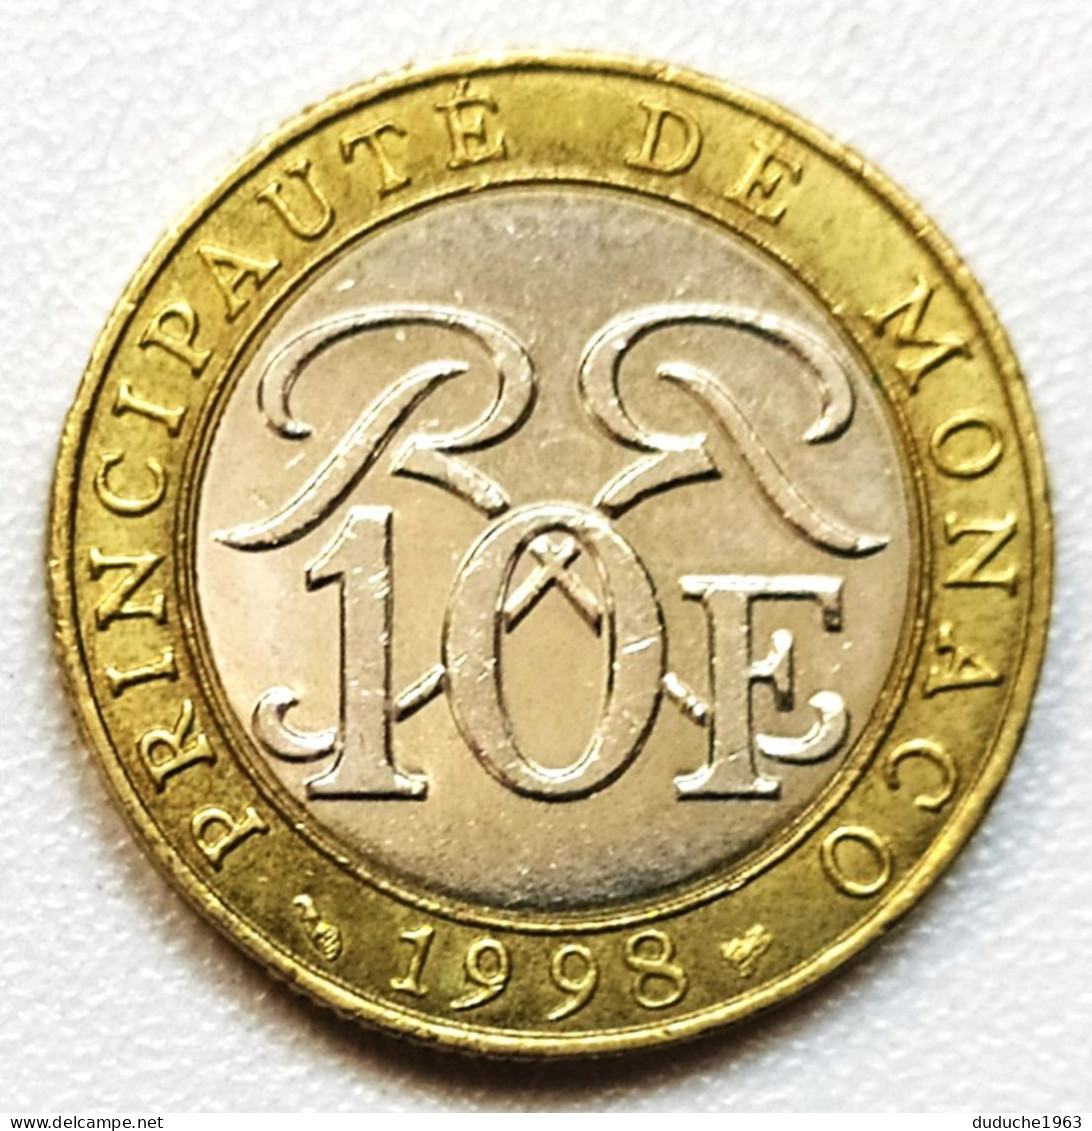 Monaco - 10 Francs 1998 - 1960-2001 Neue Francs